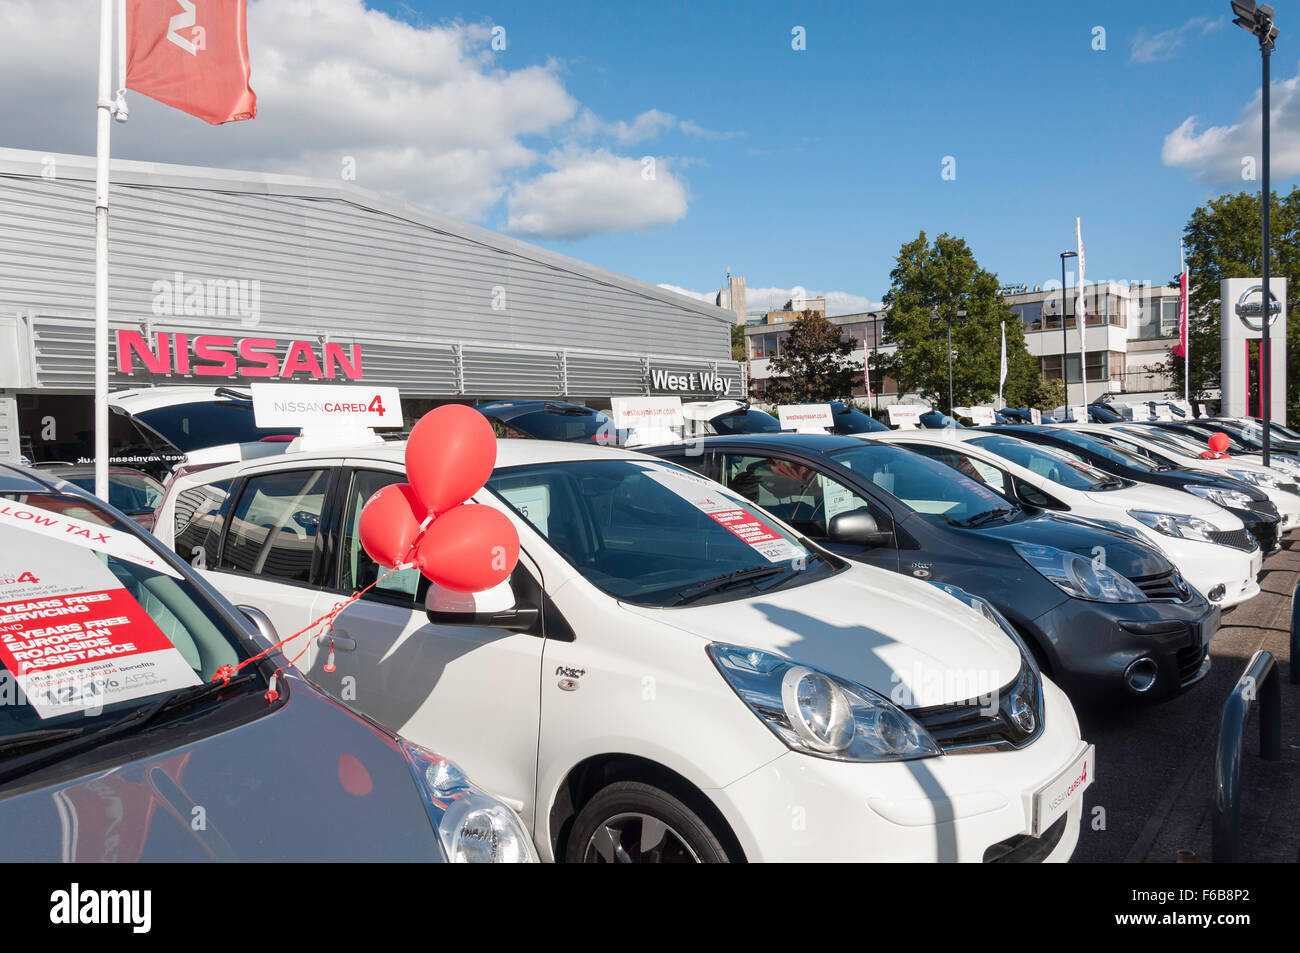 West façon Nissan soigné4 des voitures d'occasion yard, Windsor, Aldershot, Hampshire, England, United Kingdom Banque D'Images